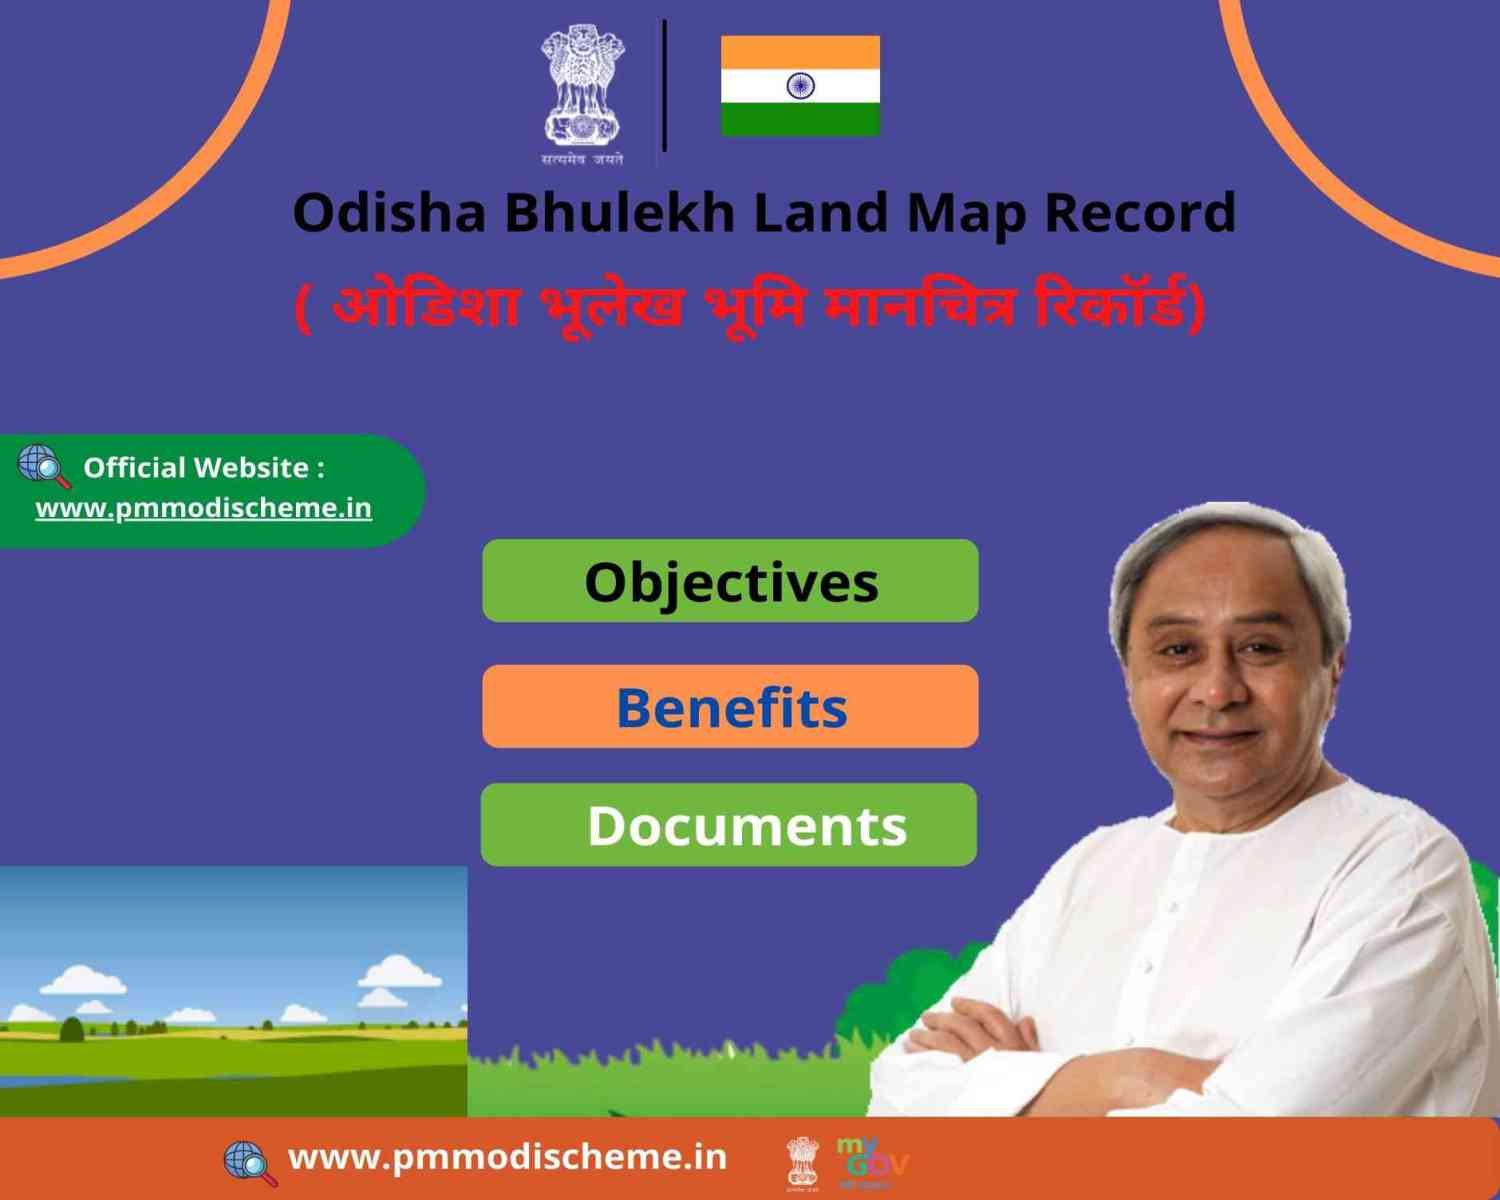 bhulekh odisha plot details 2019